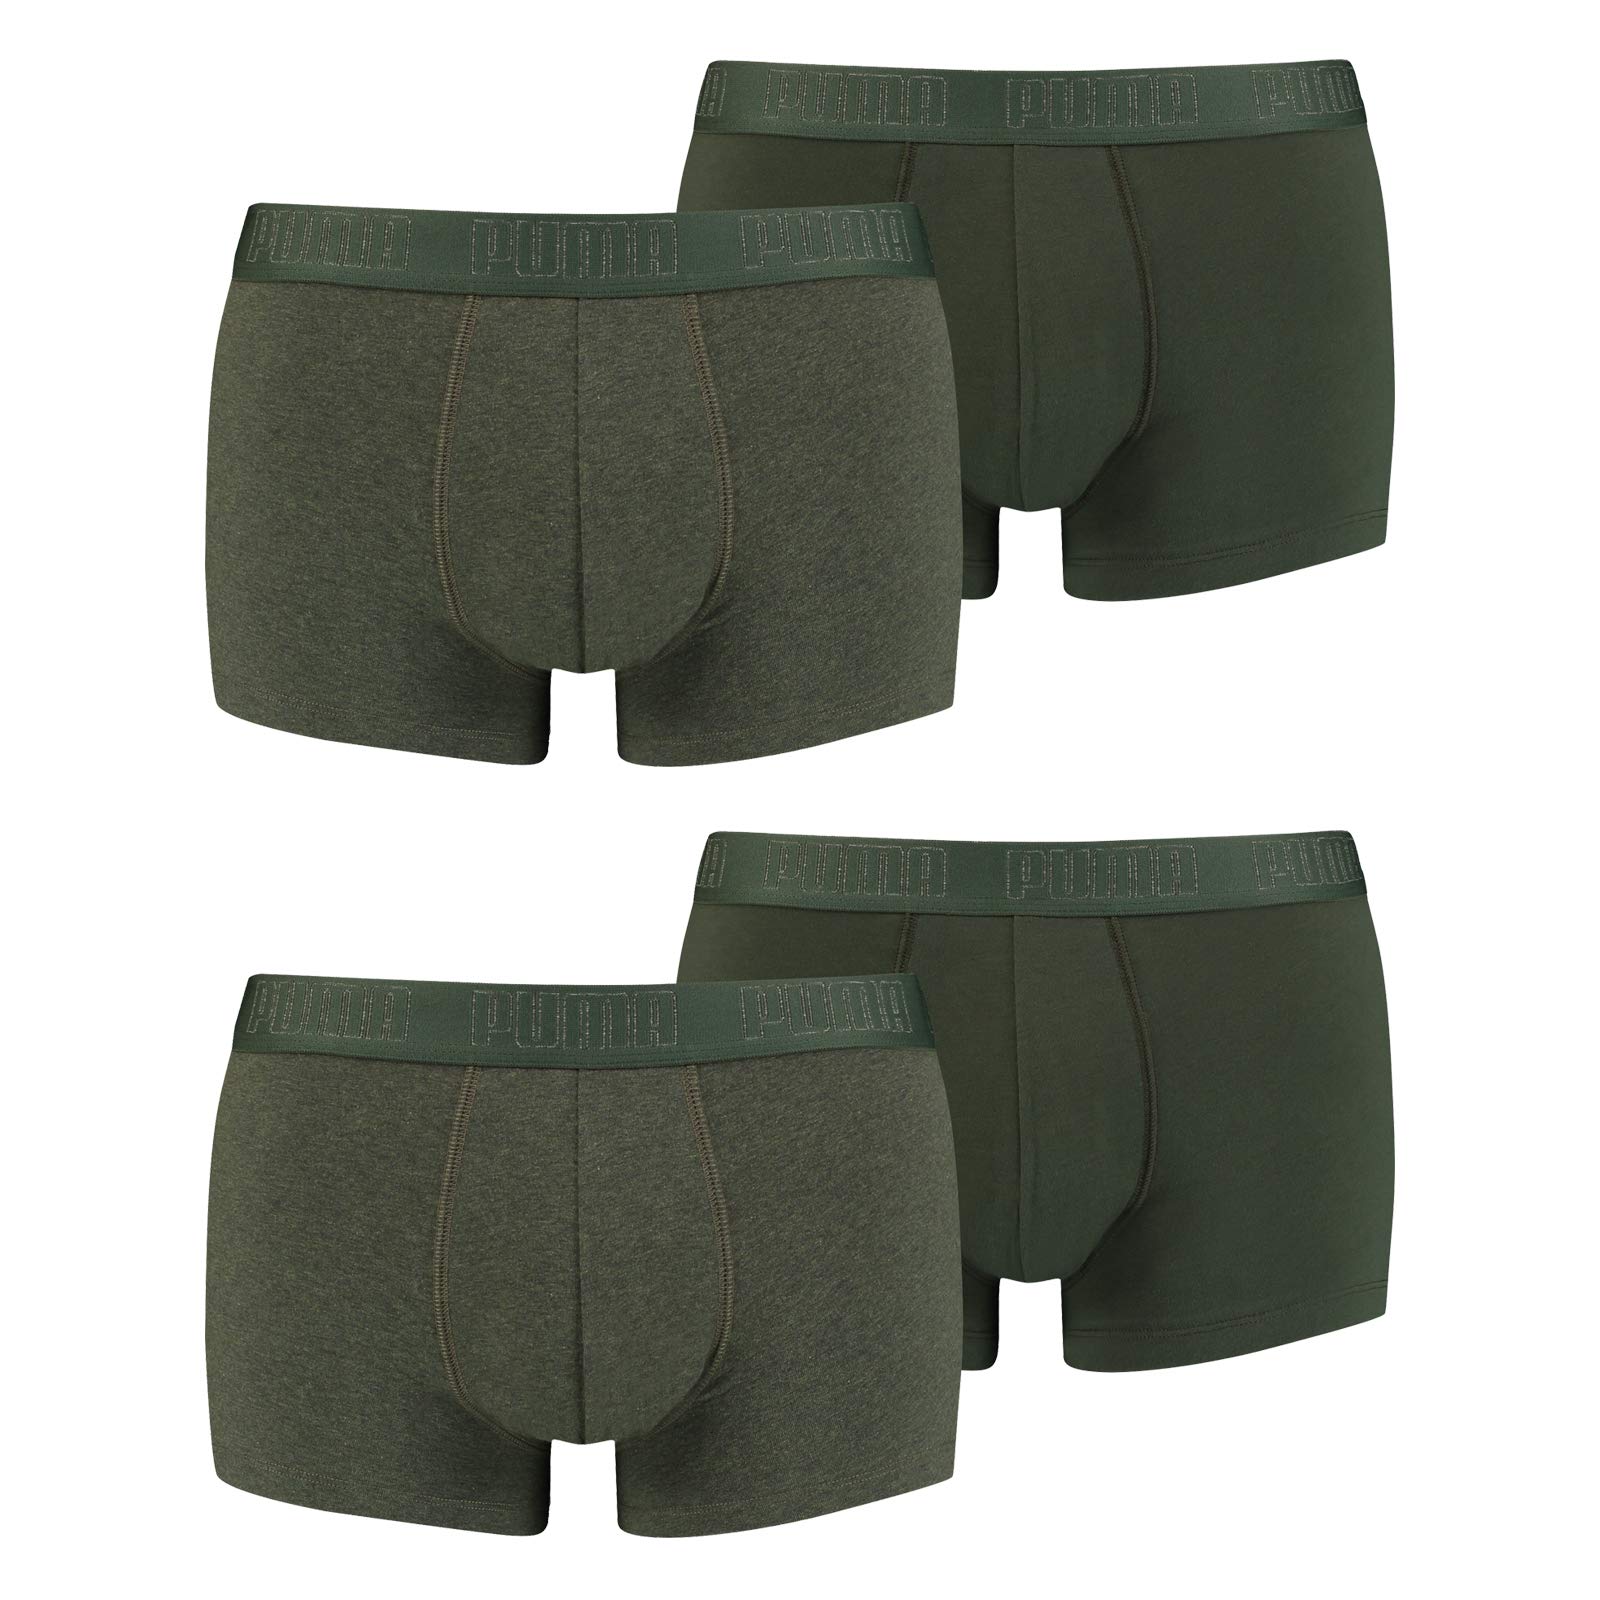 PUMA Herren Shortboxer Unterhosen Trunks 4er Pack, Wäschegröße:L, Artikel:-009 Green Melange